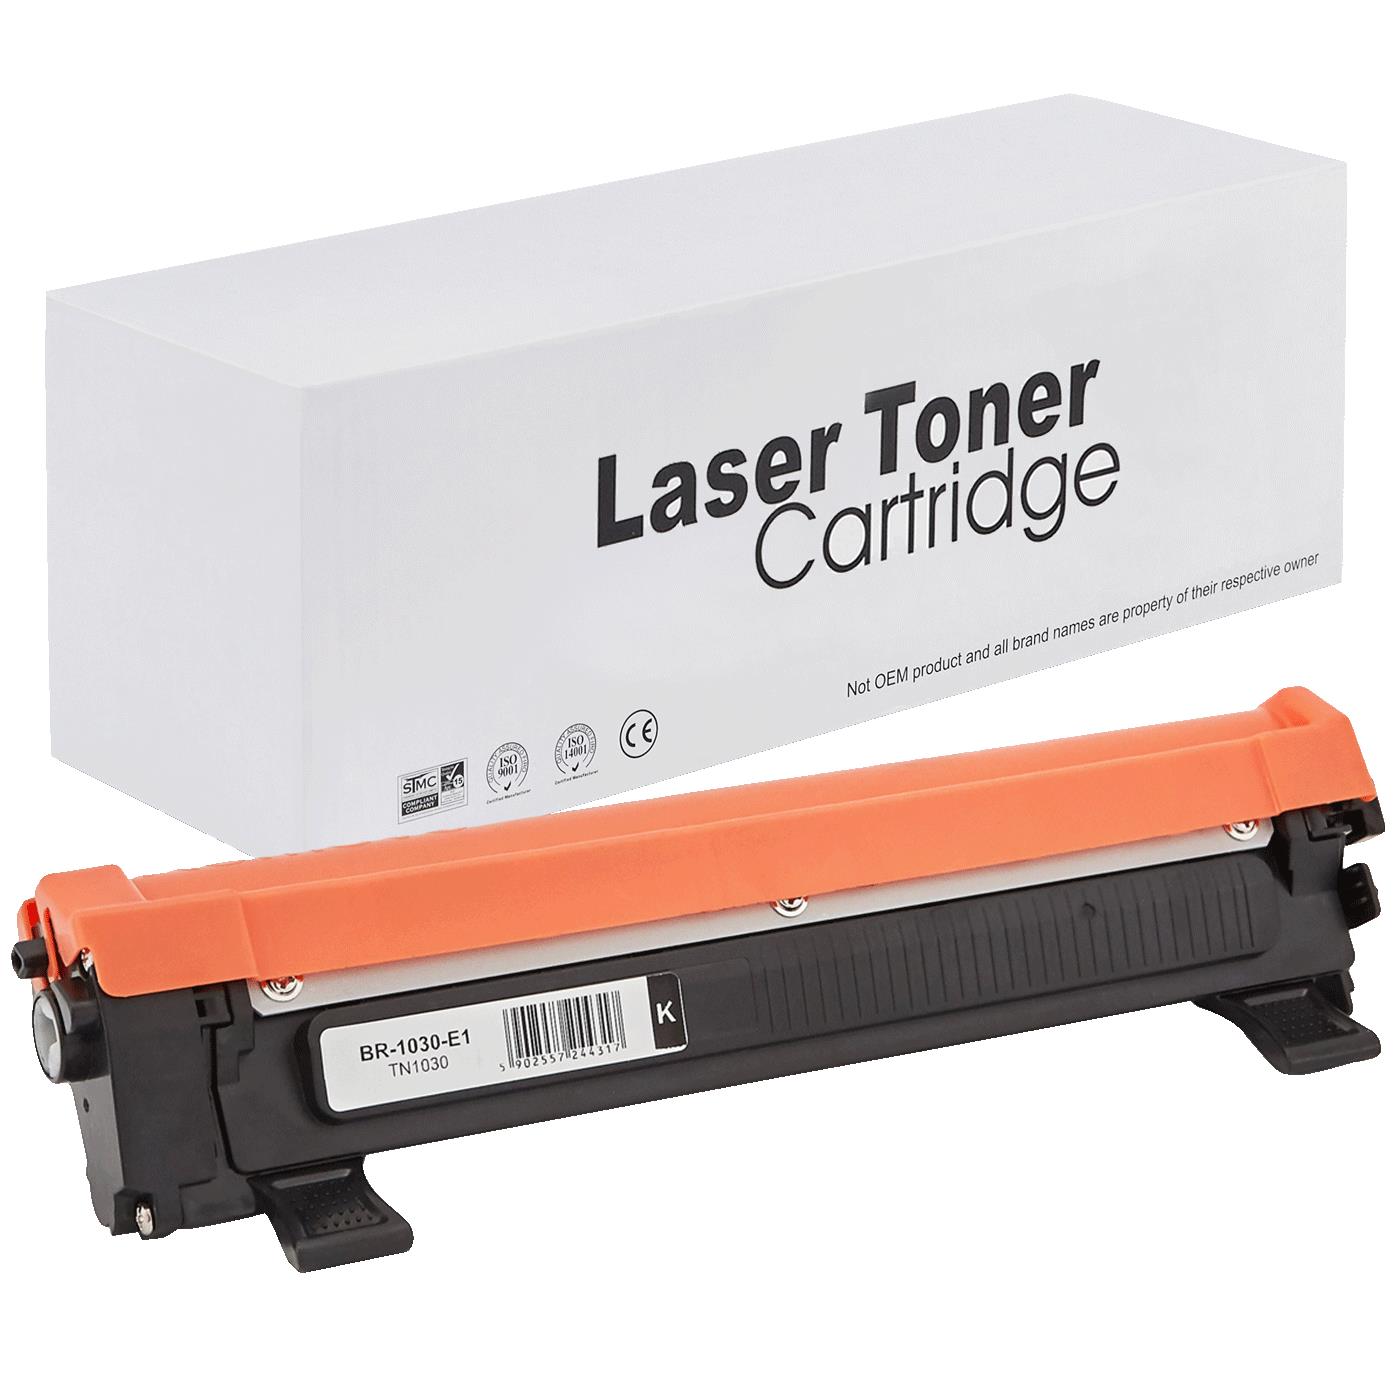 съвместима тонер касета за принтери и печатащи устройства на Brother DCP-1512E Toner BR-1030 | TN1030 / TN1050 / TN-1030. Ниски цени, прецизно изпълнение, високо качество.